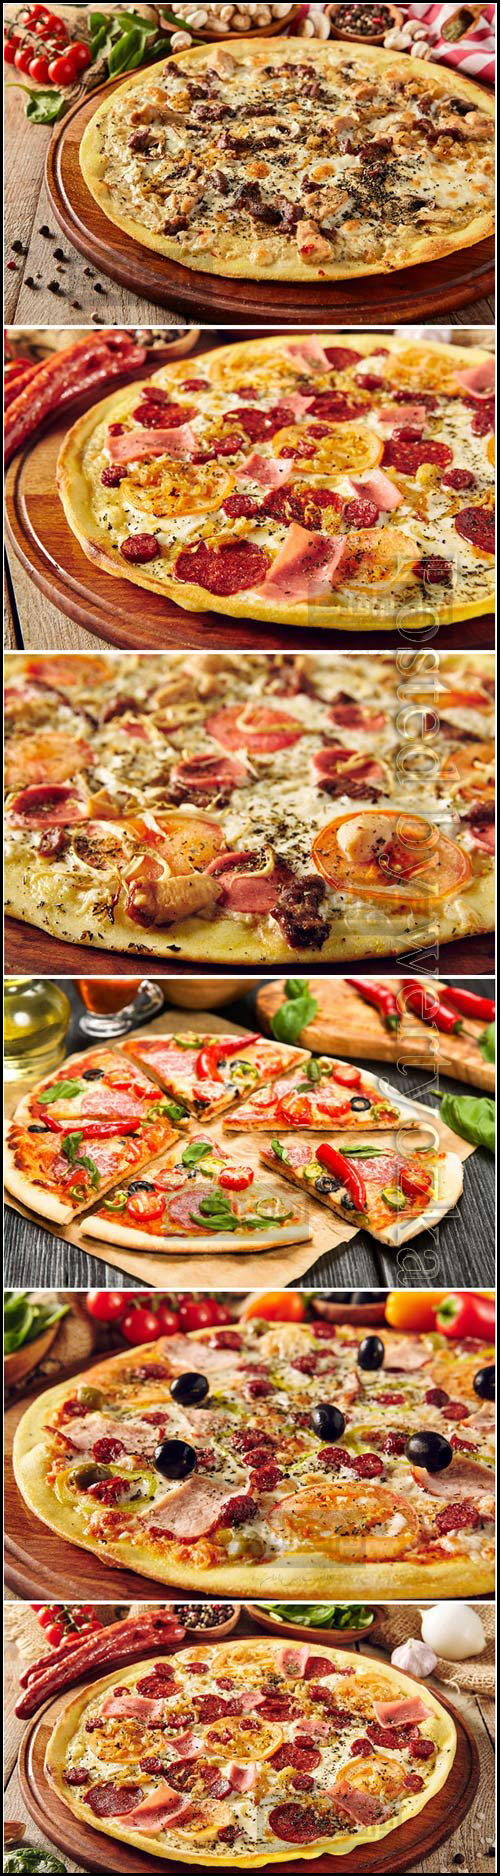 دانلود تصاویر استوک پیتزا - شماره 7